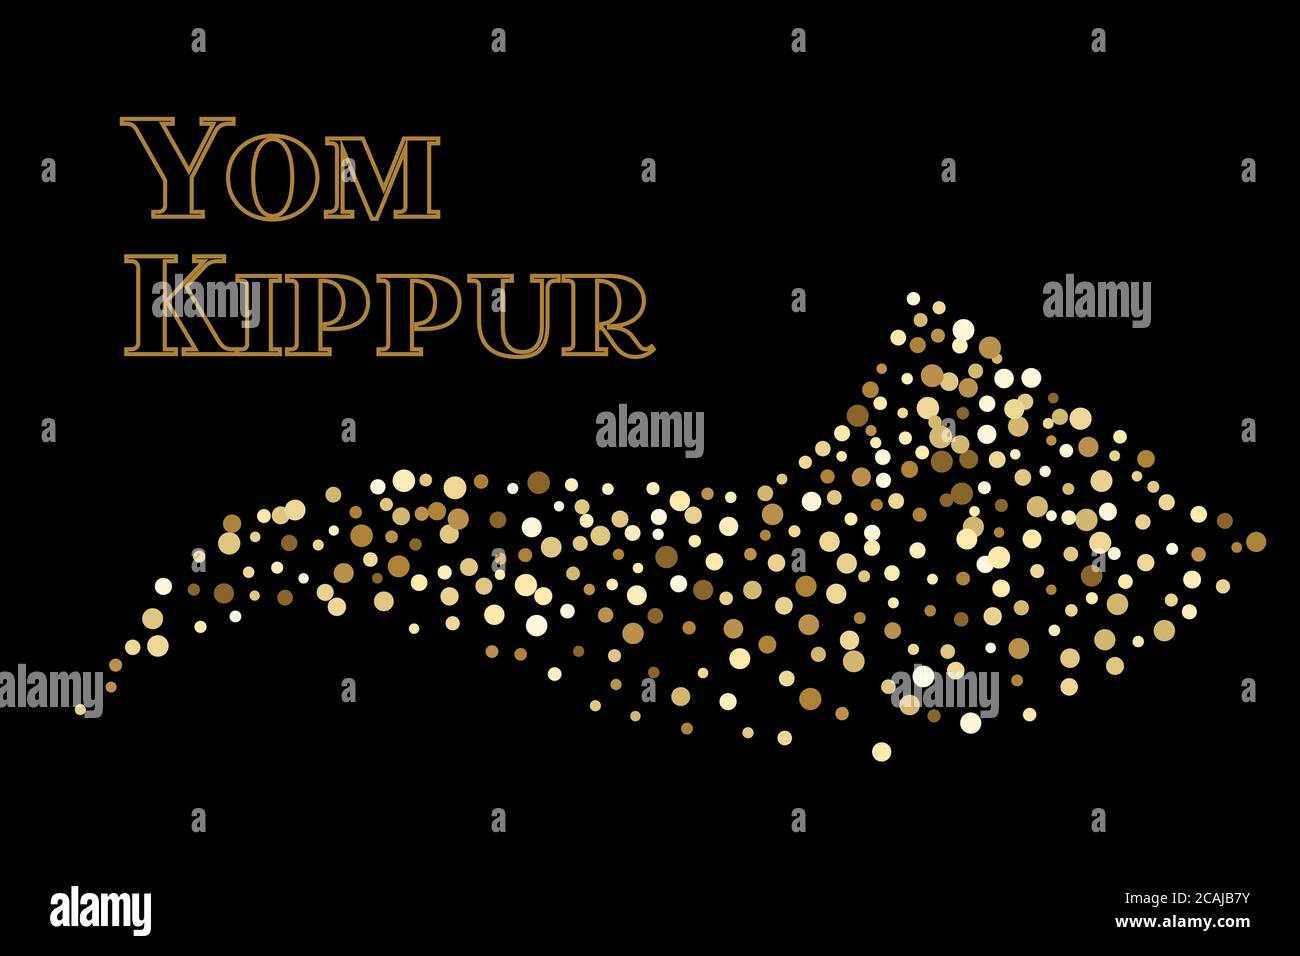 Shofar Yom Kippur biglietto d'auguri, illustrazione vettoriale. Confetti dorati scintillanti su sfondo nero. Corno di preghiera per le vacanze ebraiche. Puntini di polka casuali. Illustrazione Vettoriale